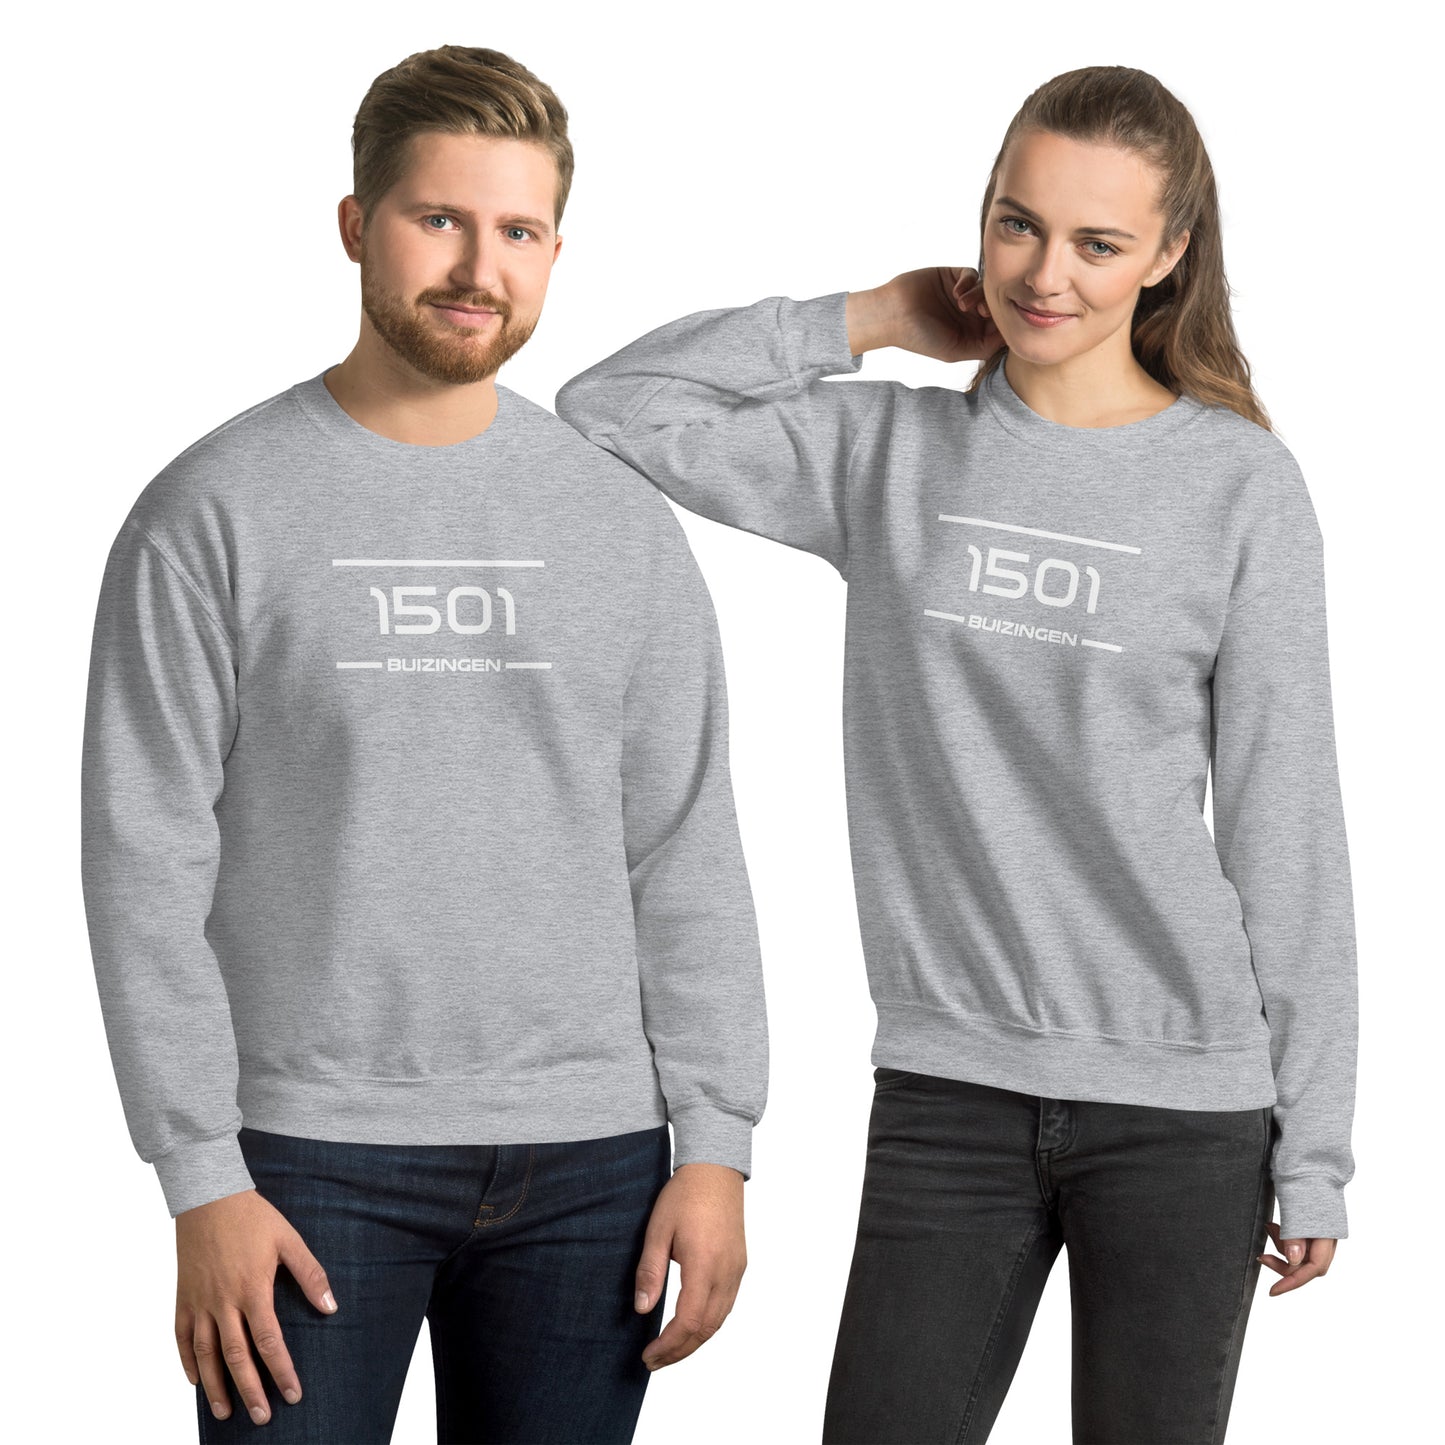 Sweater - 1501 - Buizingen (M/V)